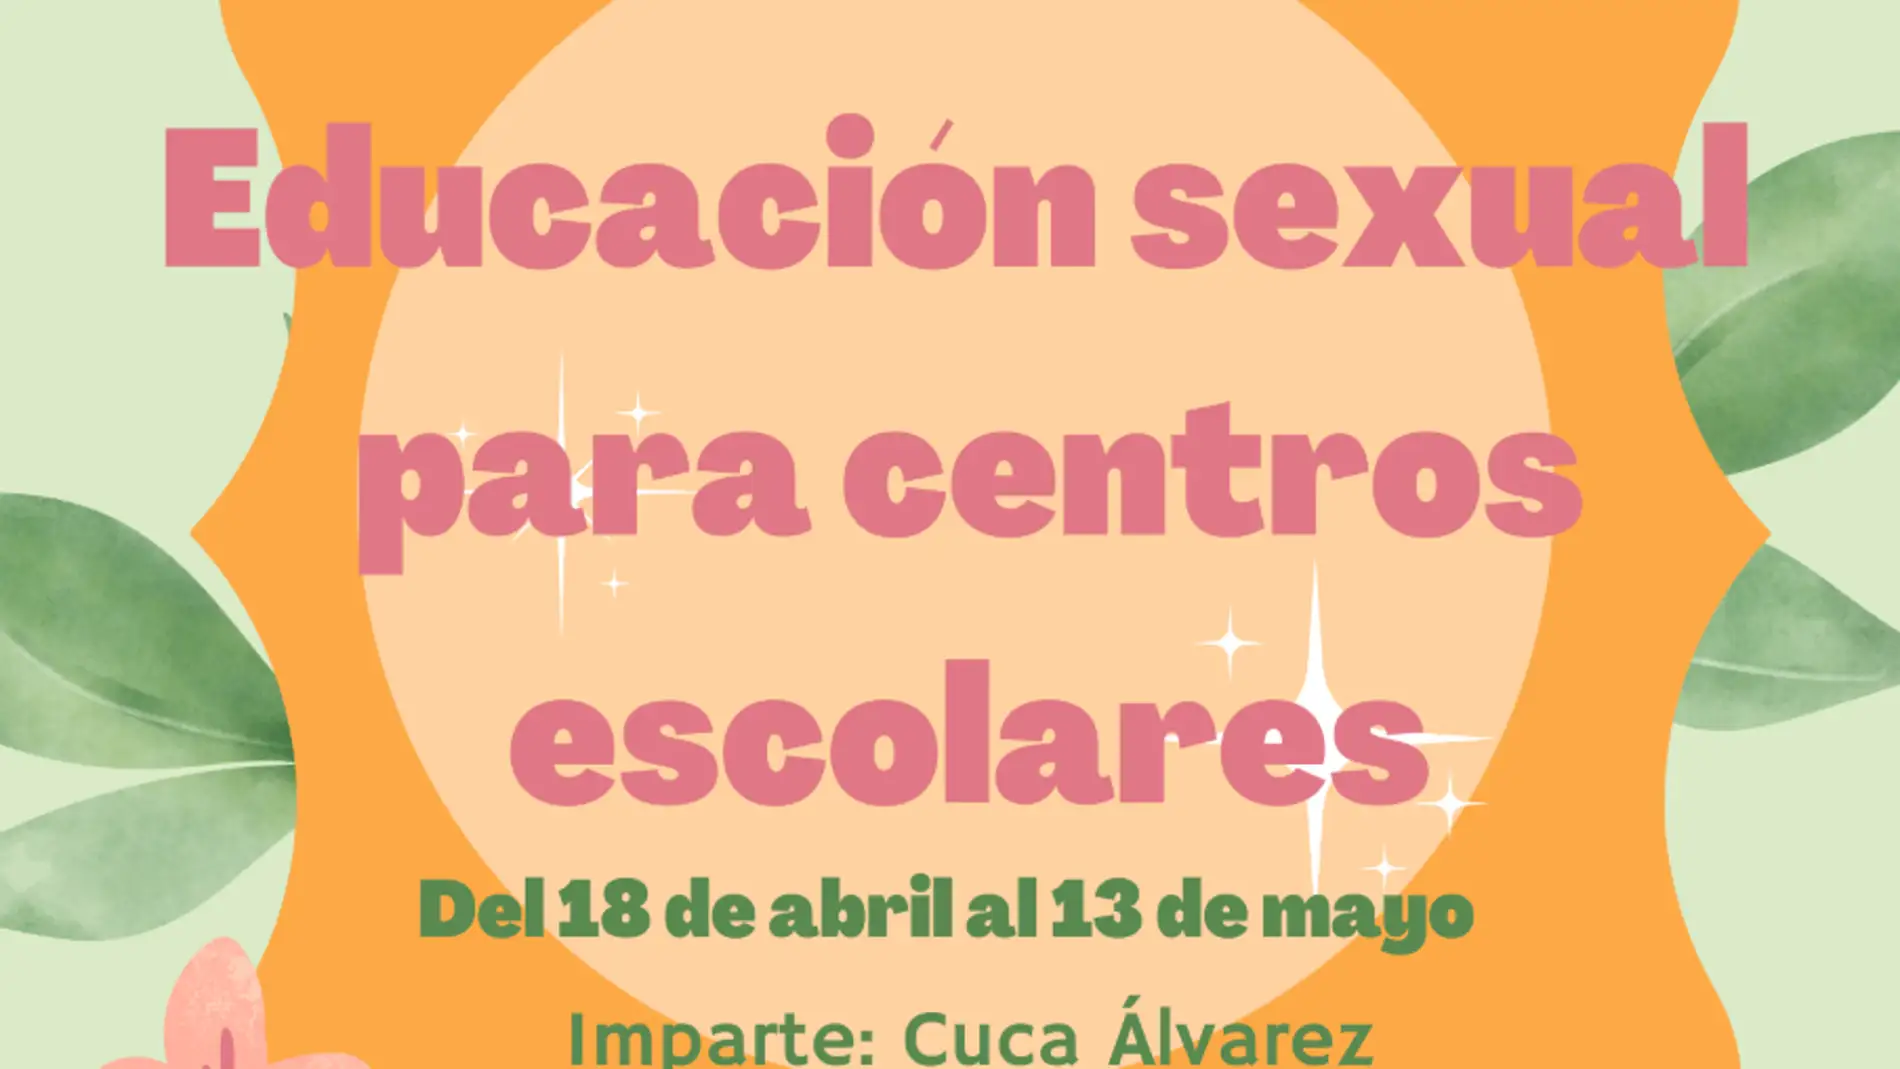 El Ayuntamiento de Aguilar de Campoo organiza y financia talleres de educación sexual para todos los centros educativos del municipio